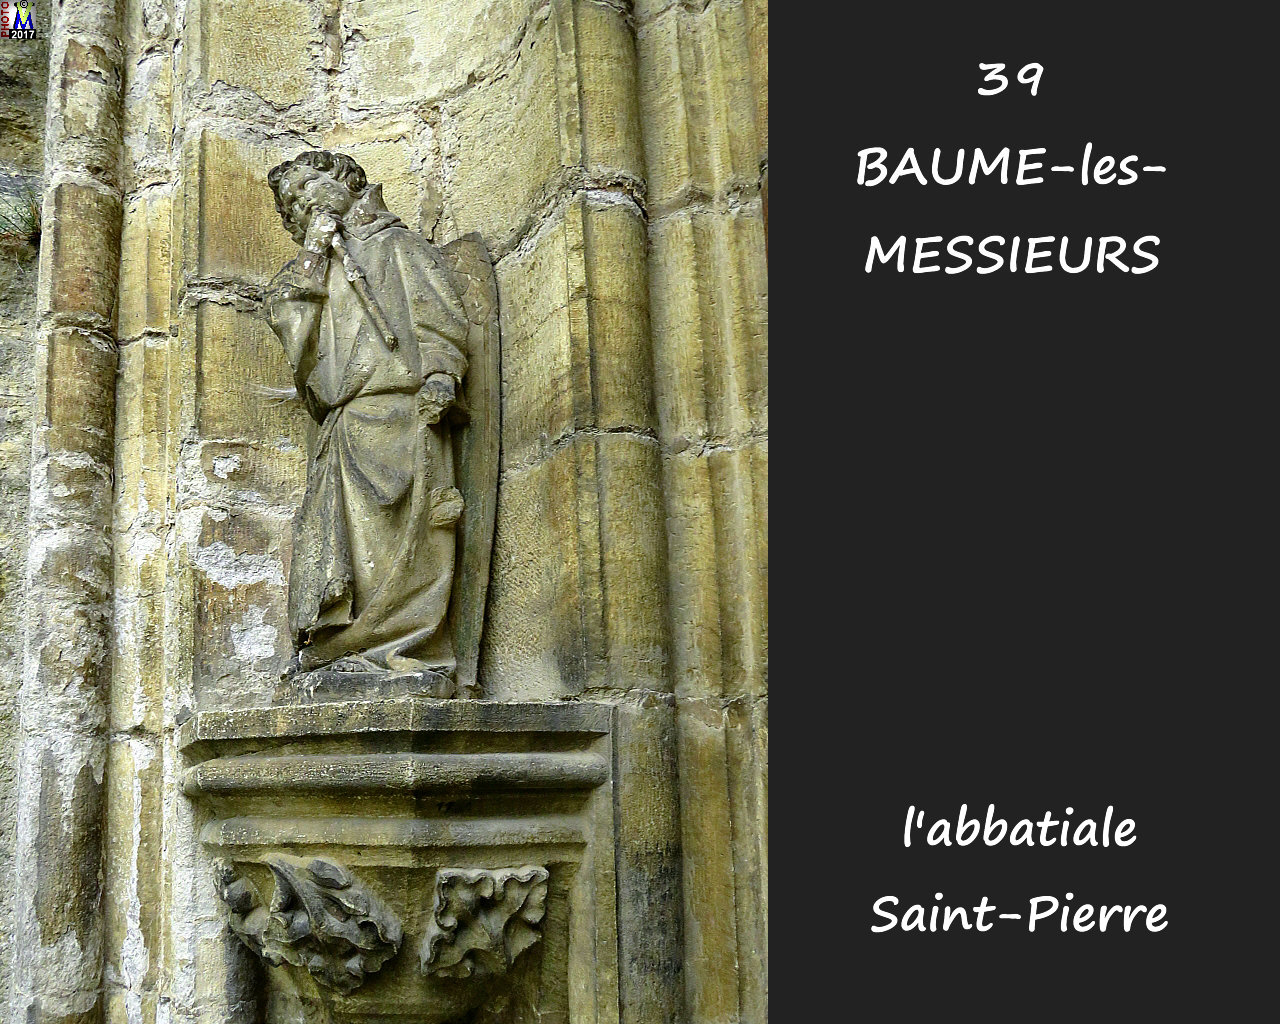 39BAUME-LES-MESSIEURS_abbatiale_116.jpg